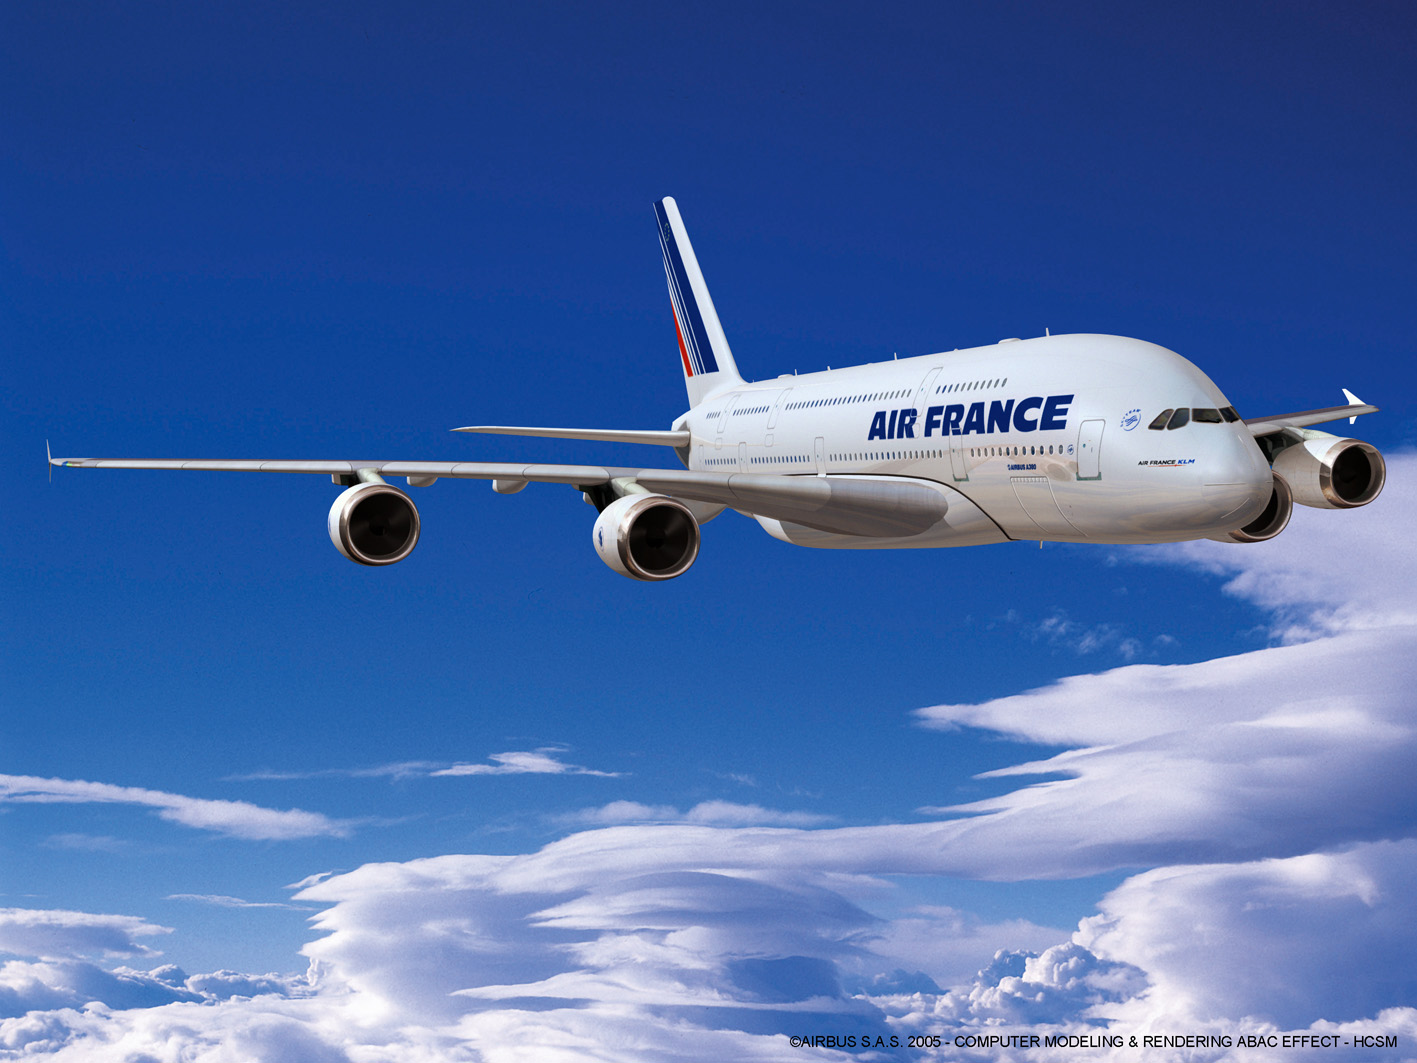 Air France vol 007 New York Paris: 19 heures de voyage